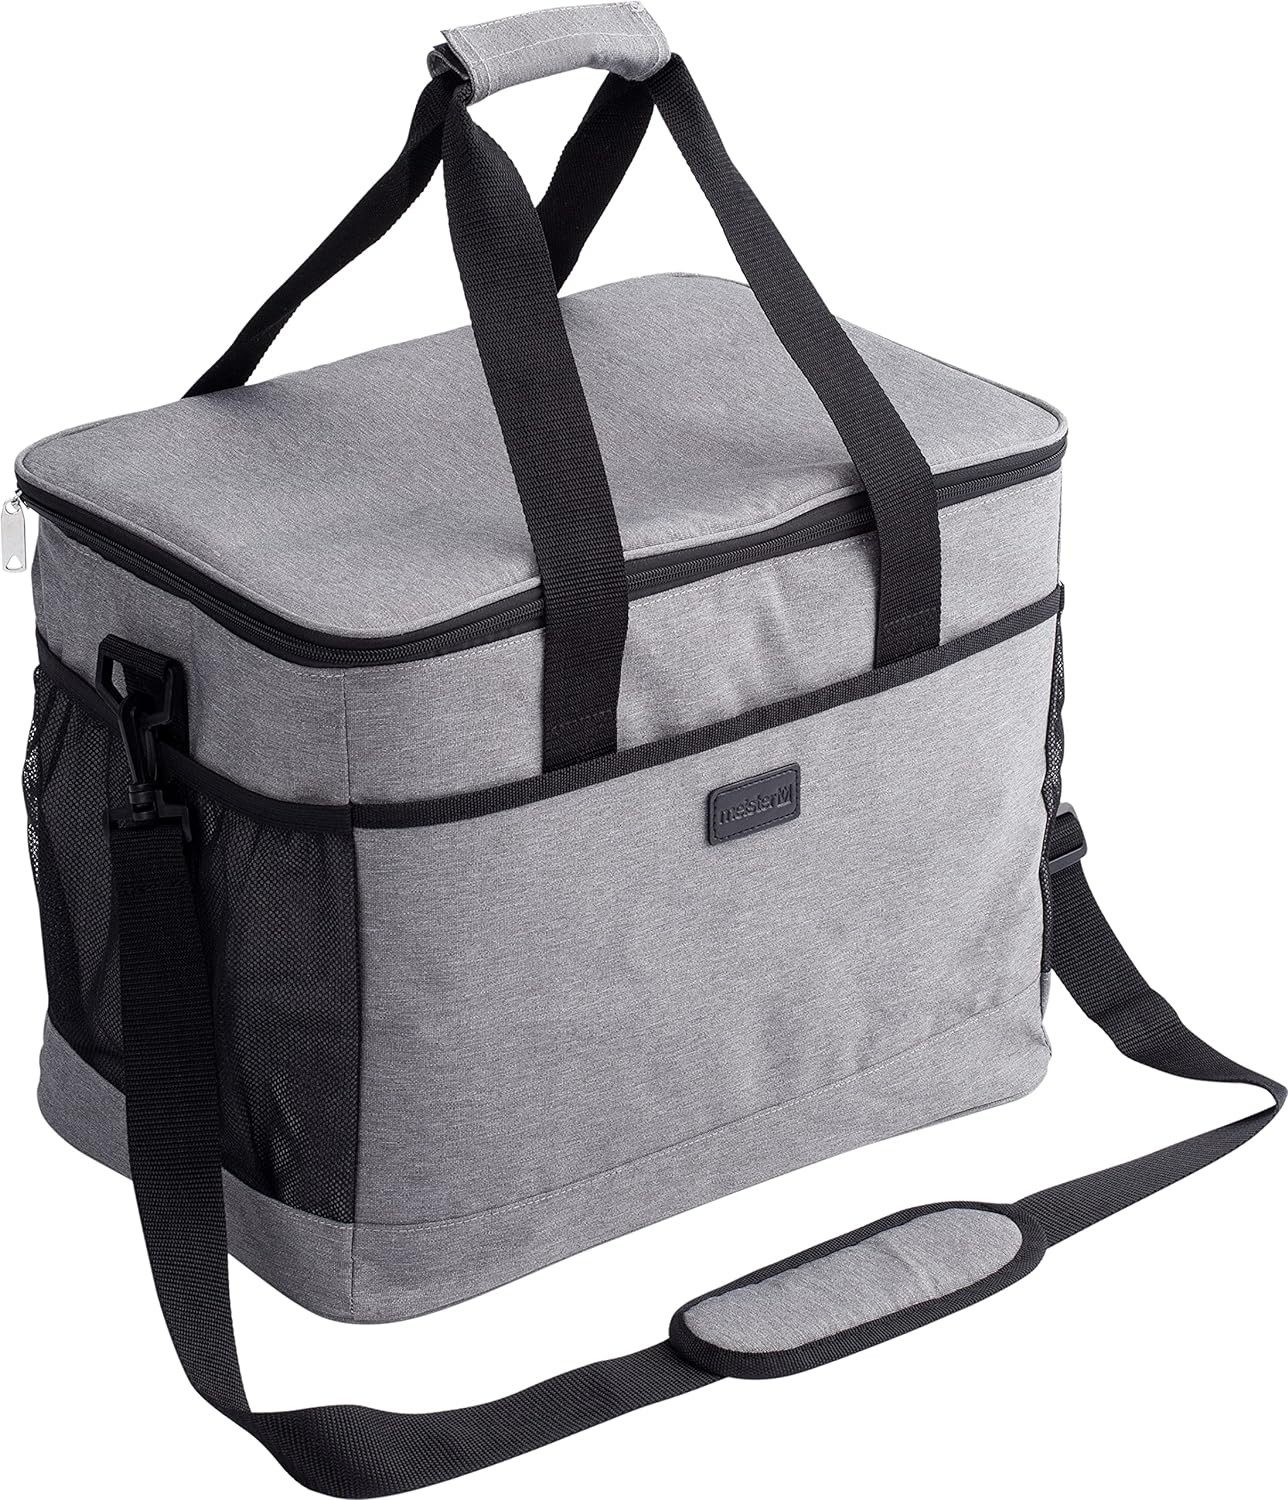 Meister Werkzeuge Kühltasche Kühltasche 32L Grau regenfestes Material Picknicktasche mit Tragegurt